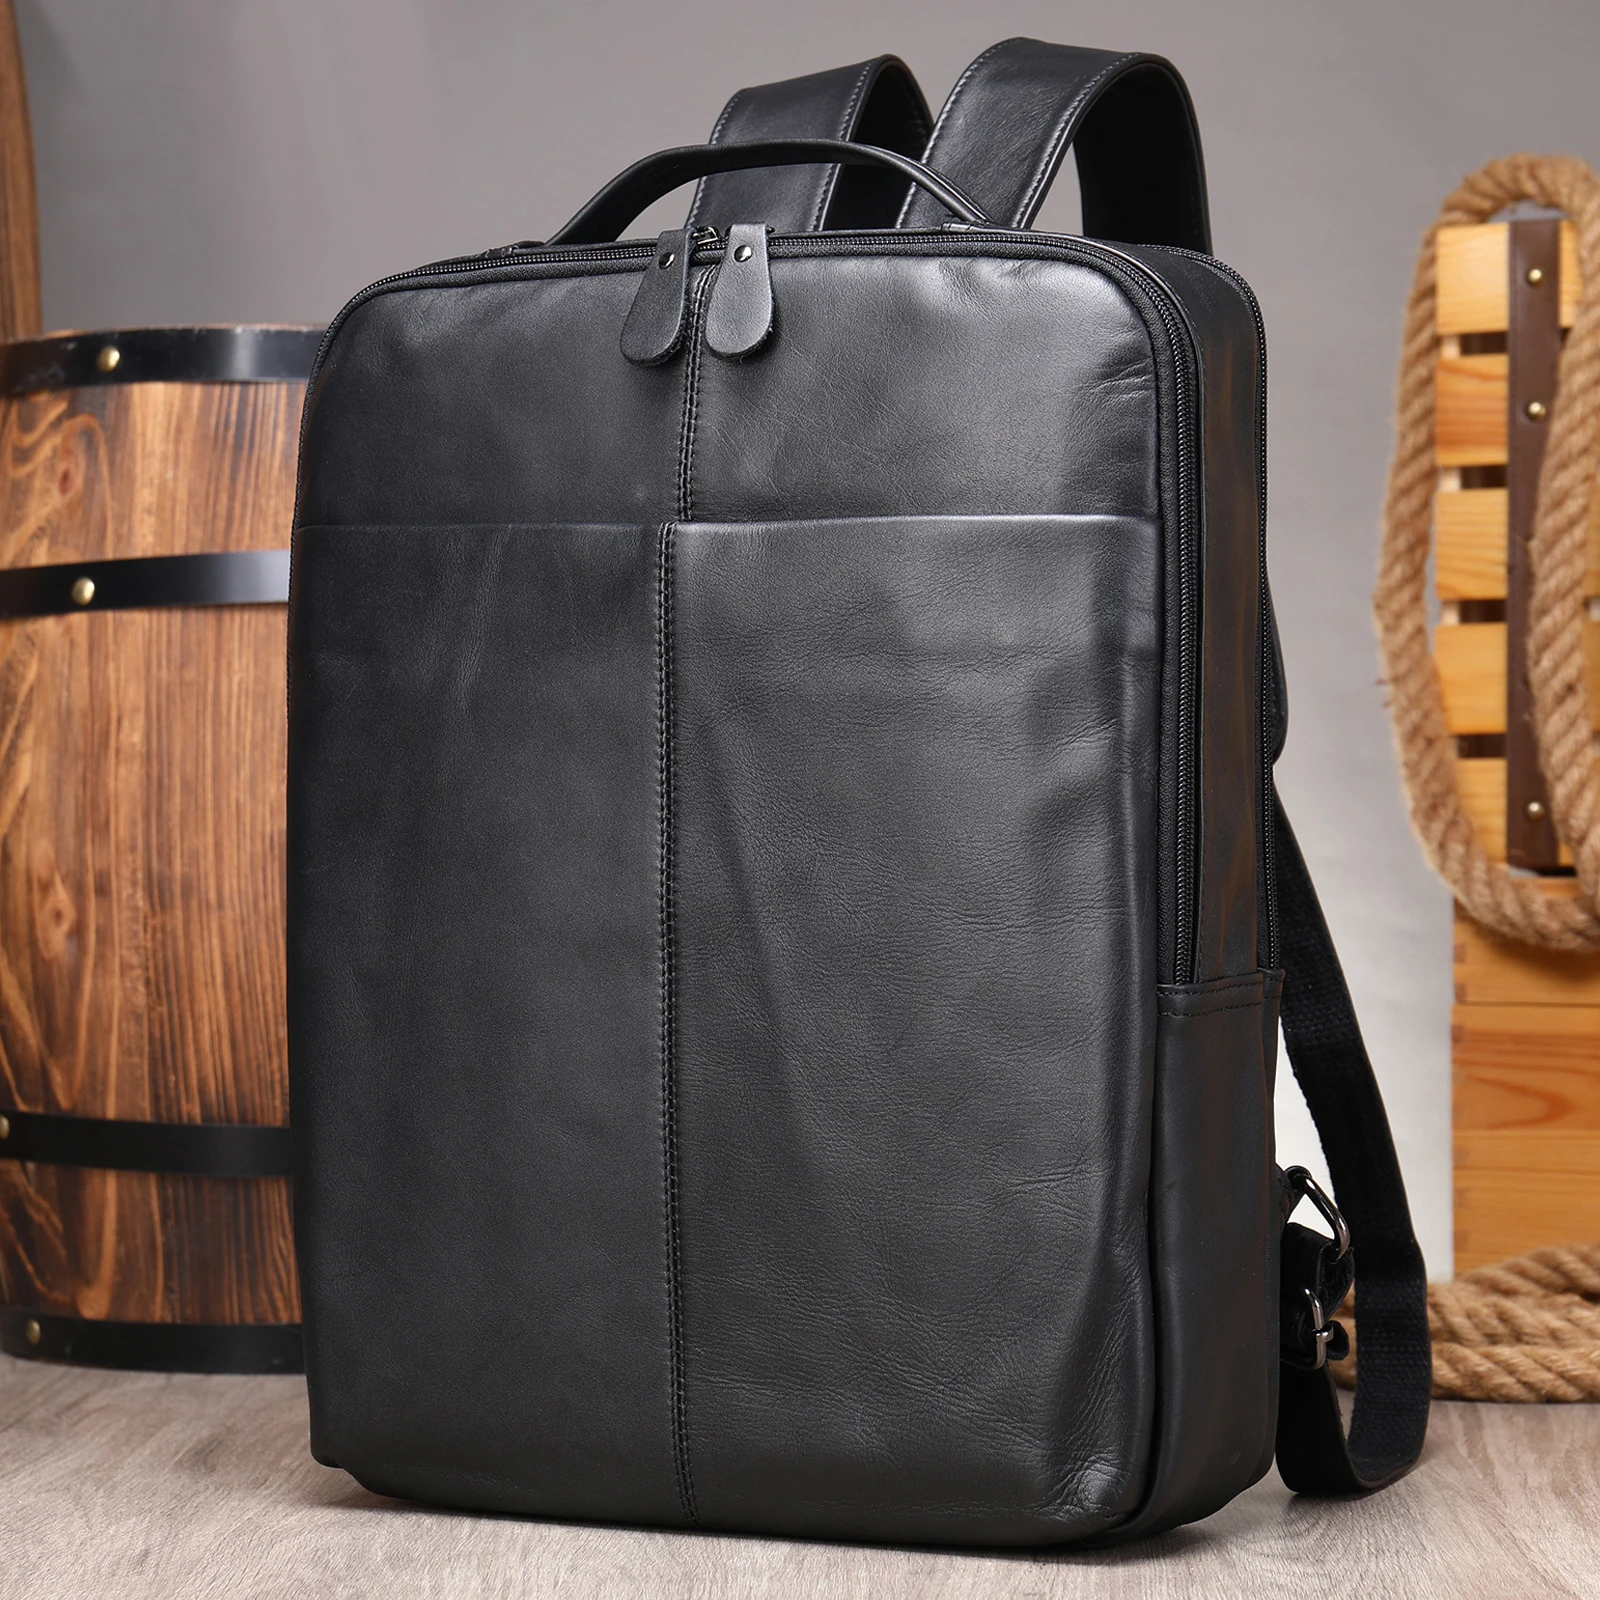 Newsbirds Genuine Leather School Bags Soft Cowhide Men's Laptop Backpack 14 Inch Bagpack Travel Bag Man Leather Shoulder Bag